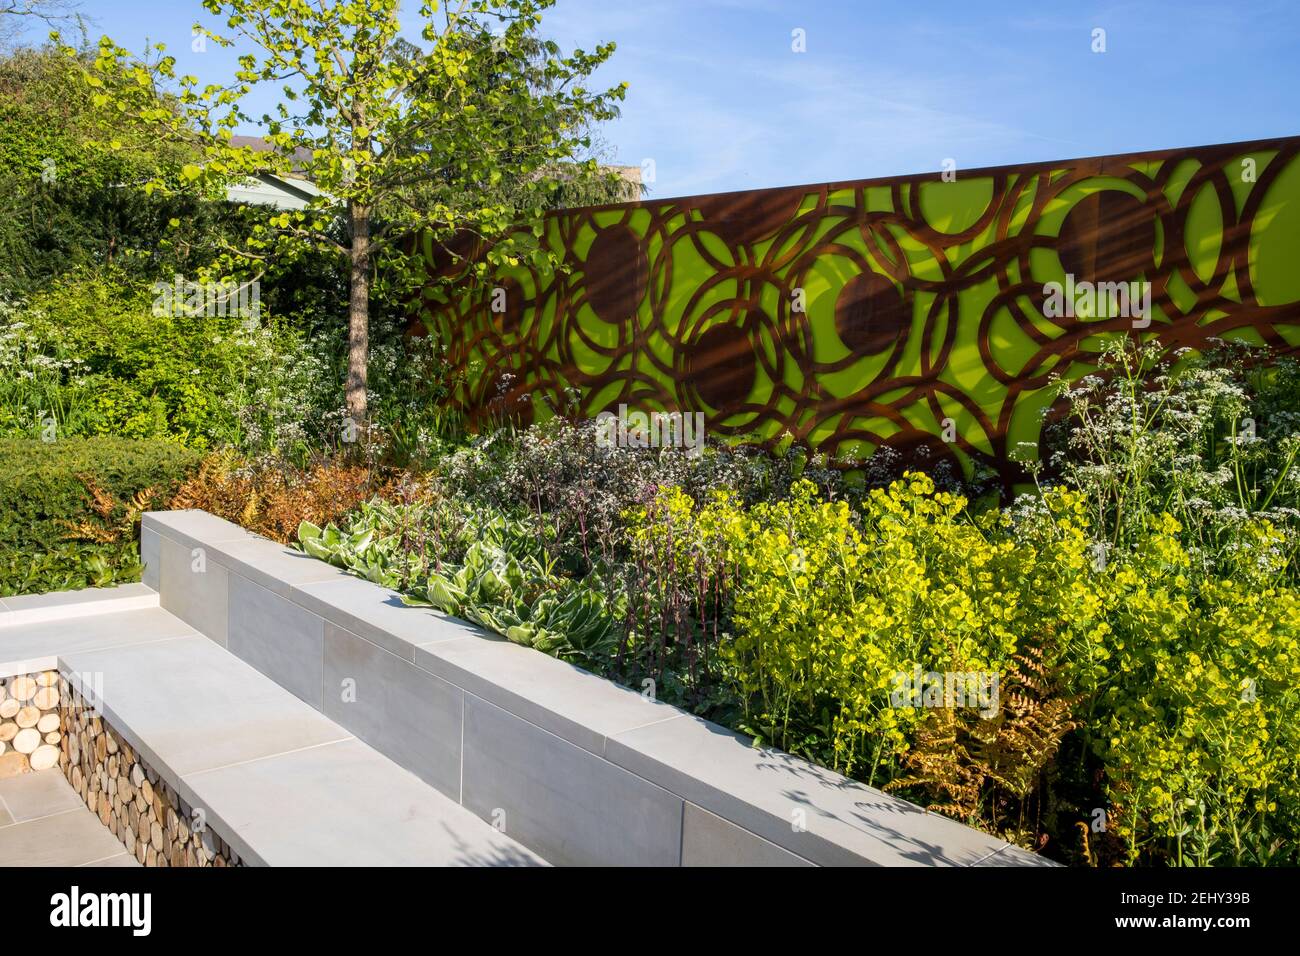 Ein moderner Stadtgarten Zaun Paneele und eine Steinbank - Frühling -Blumengrenze - blauer Himmel - Corylus colurna - ein türkischer Haselnussbaum -England Vereinigtes Königreich Stockfoto